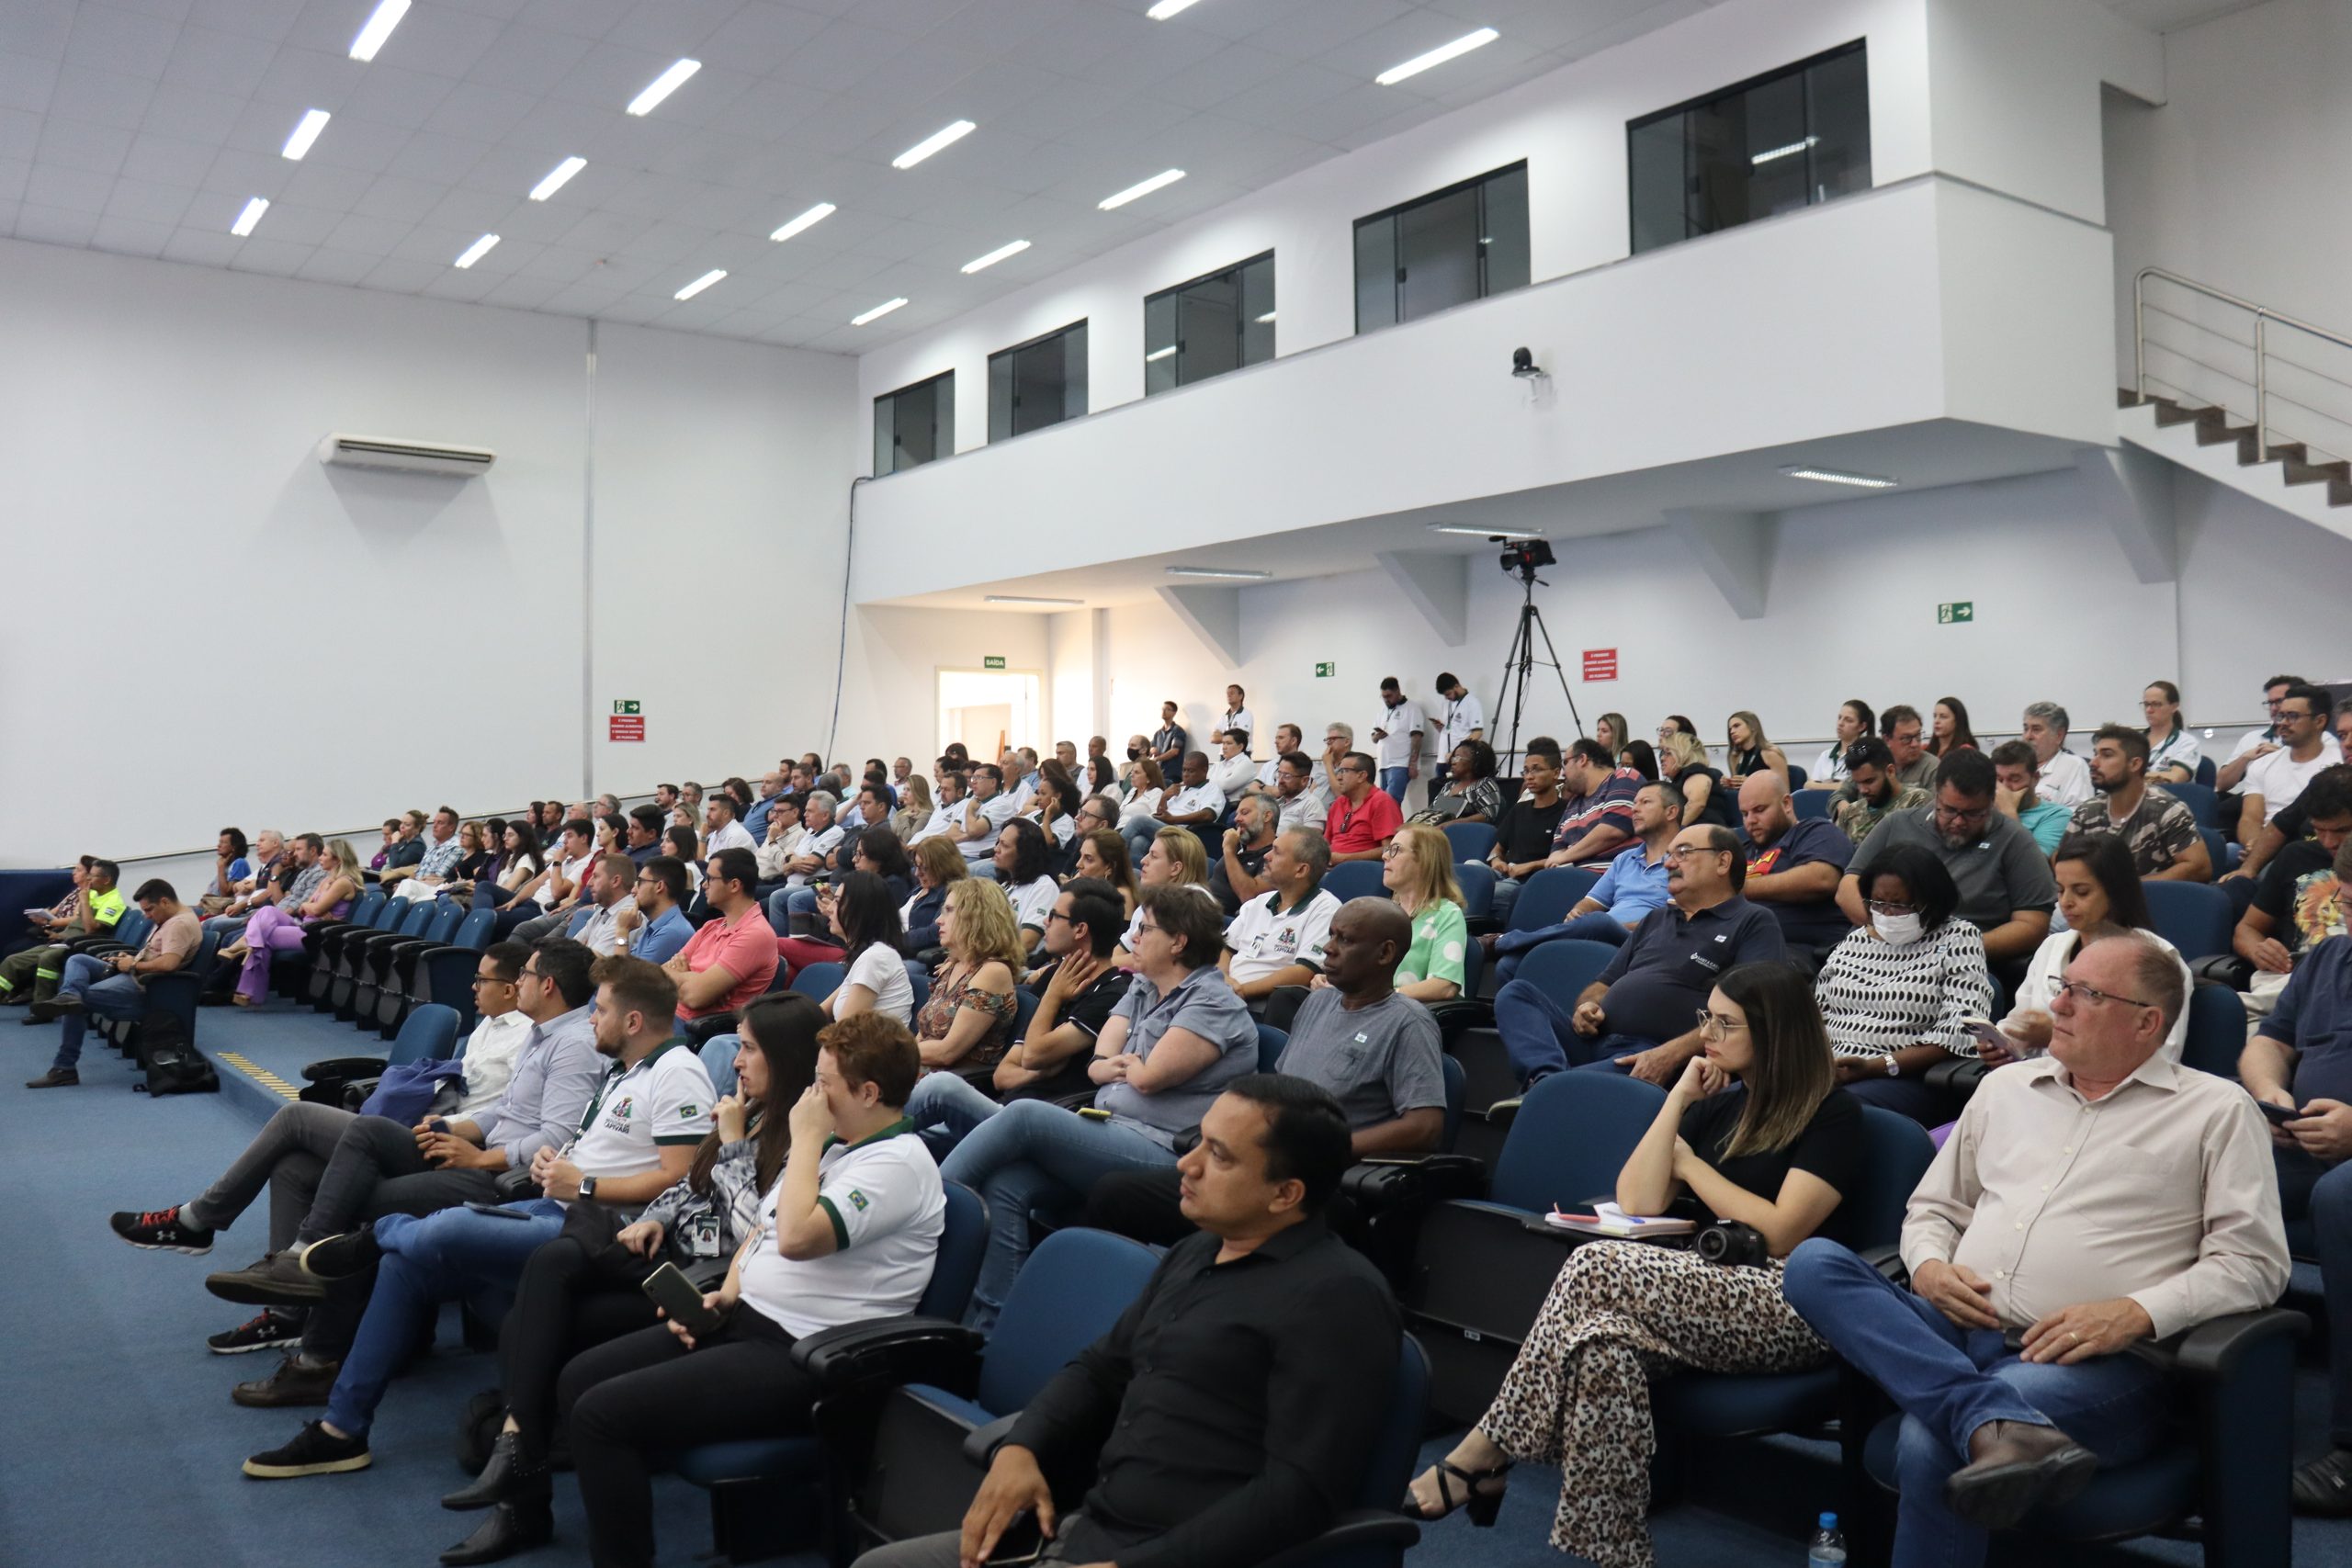 Prefeito Vitão apresenta abertura da revisão do Plano Diretor em evento que reuniu cerca de 100 pessoas na Câmara Municipal de Vereadores